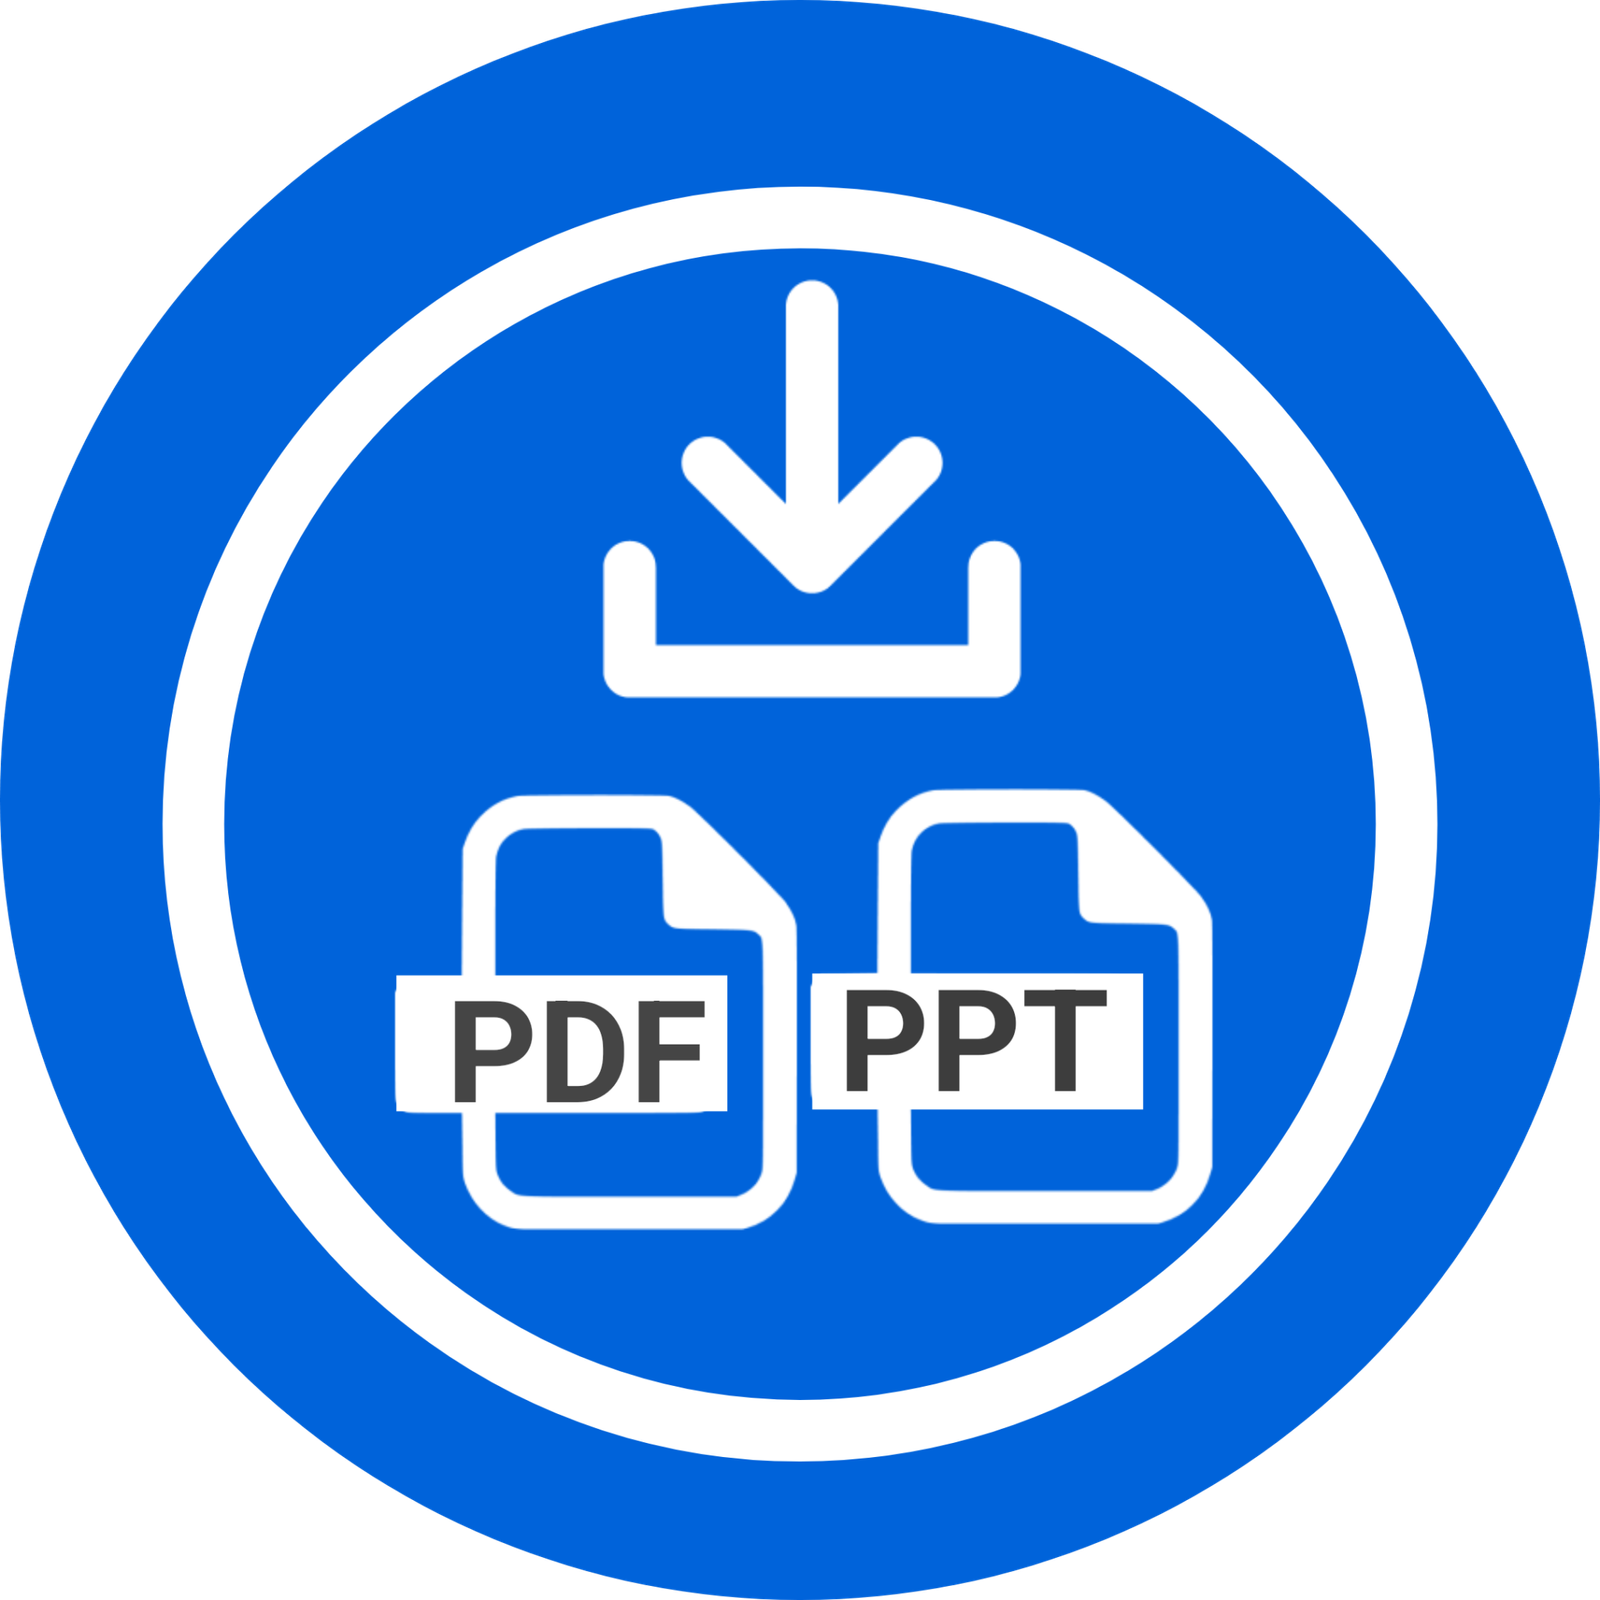 slideshare downloader download pdf and ppt presentation